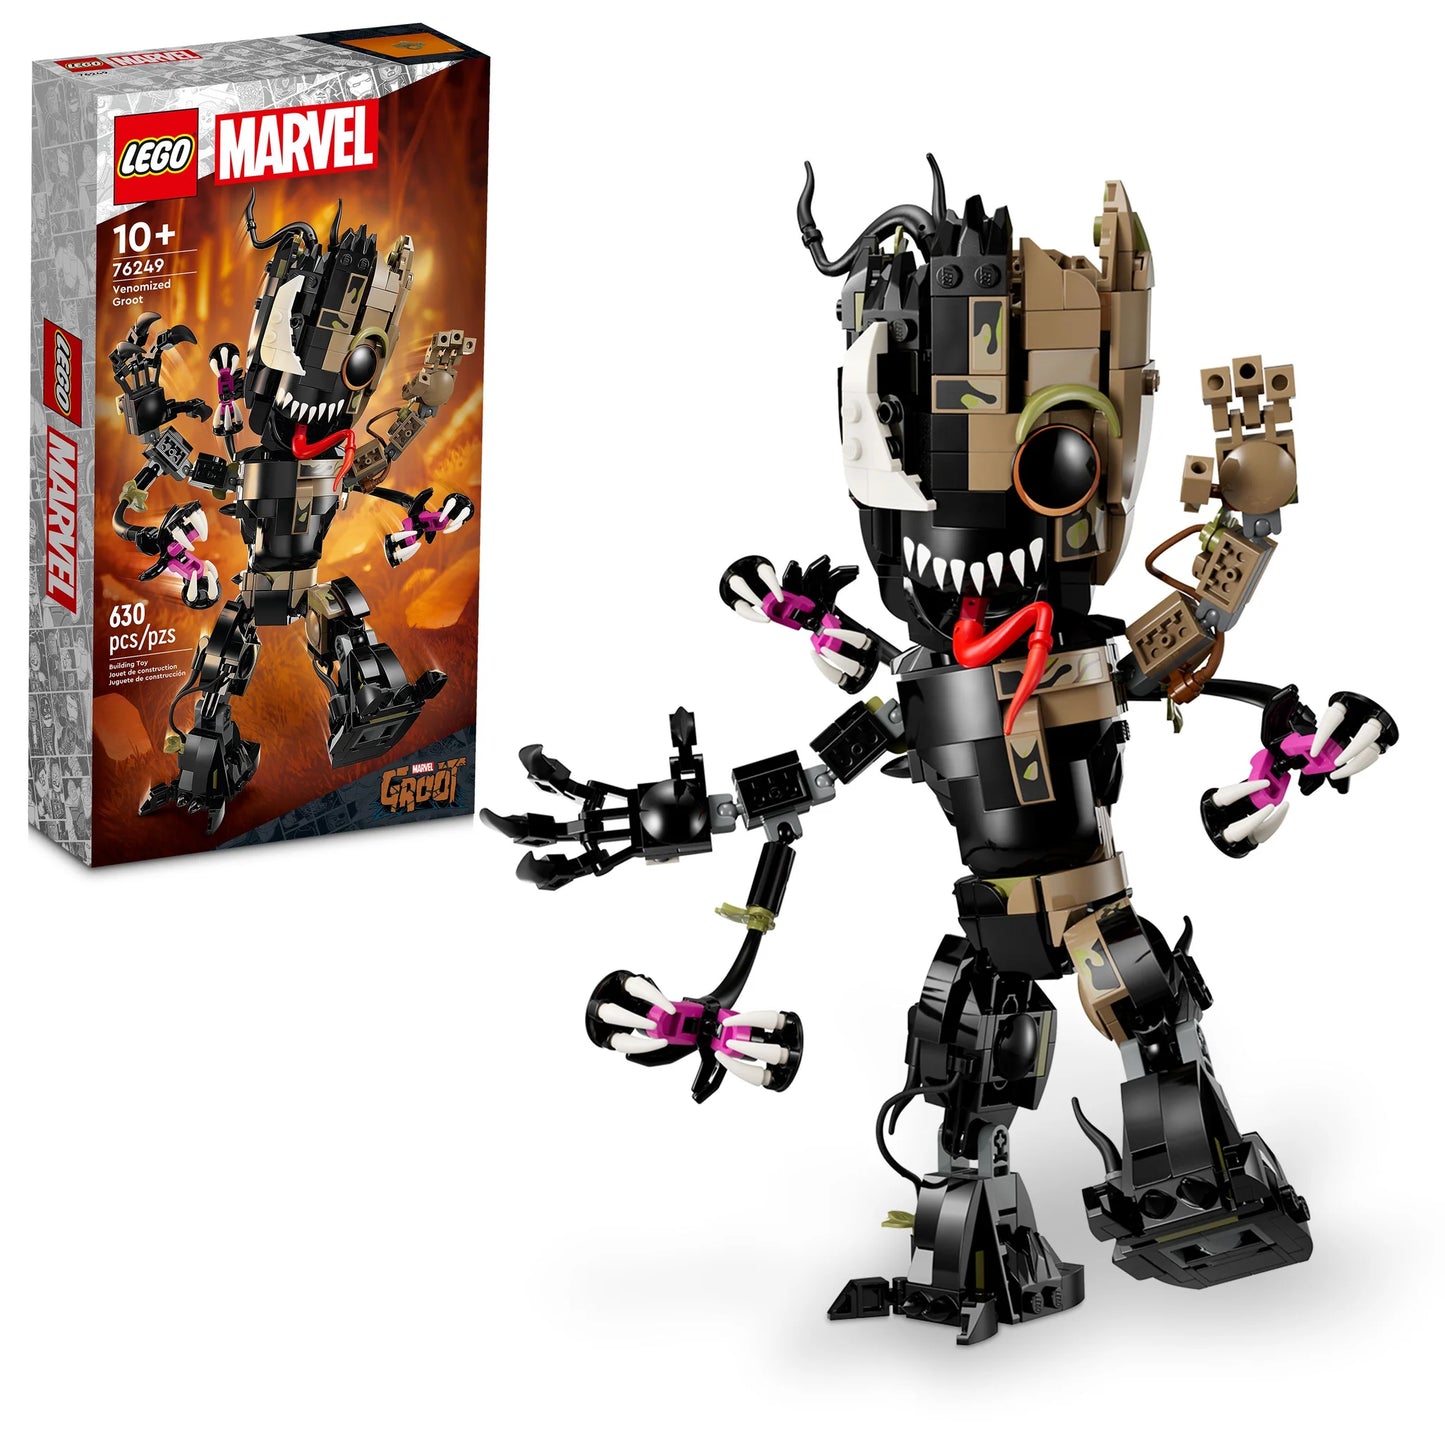 LEGO Marvel 76249 Venomized Groot